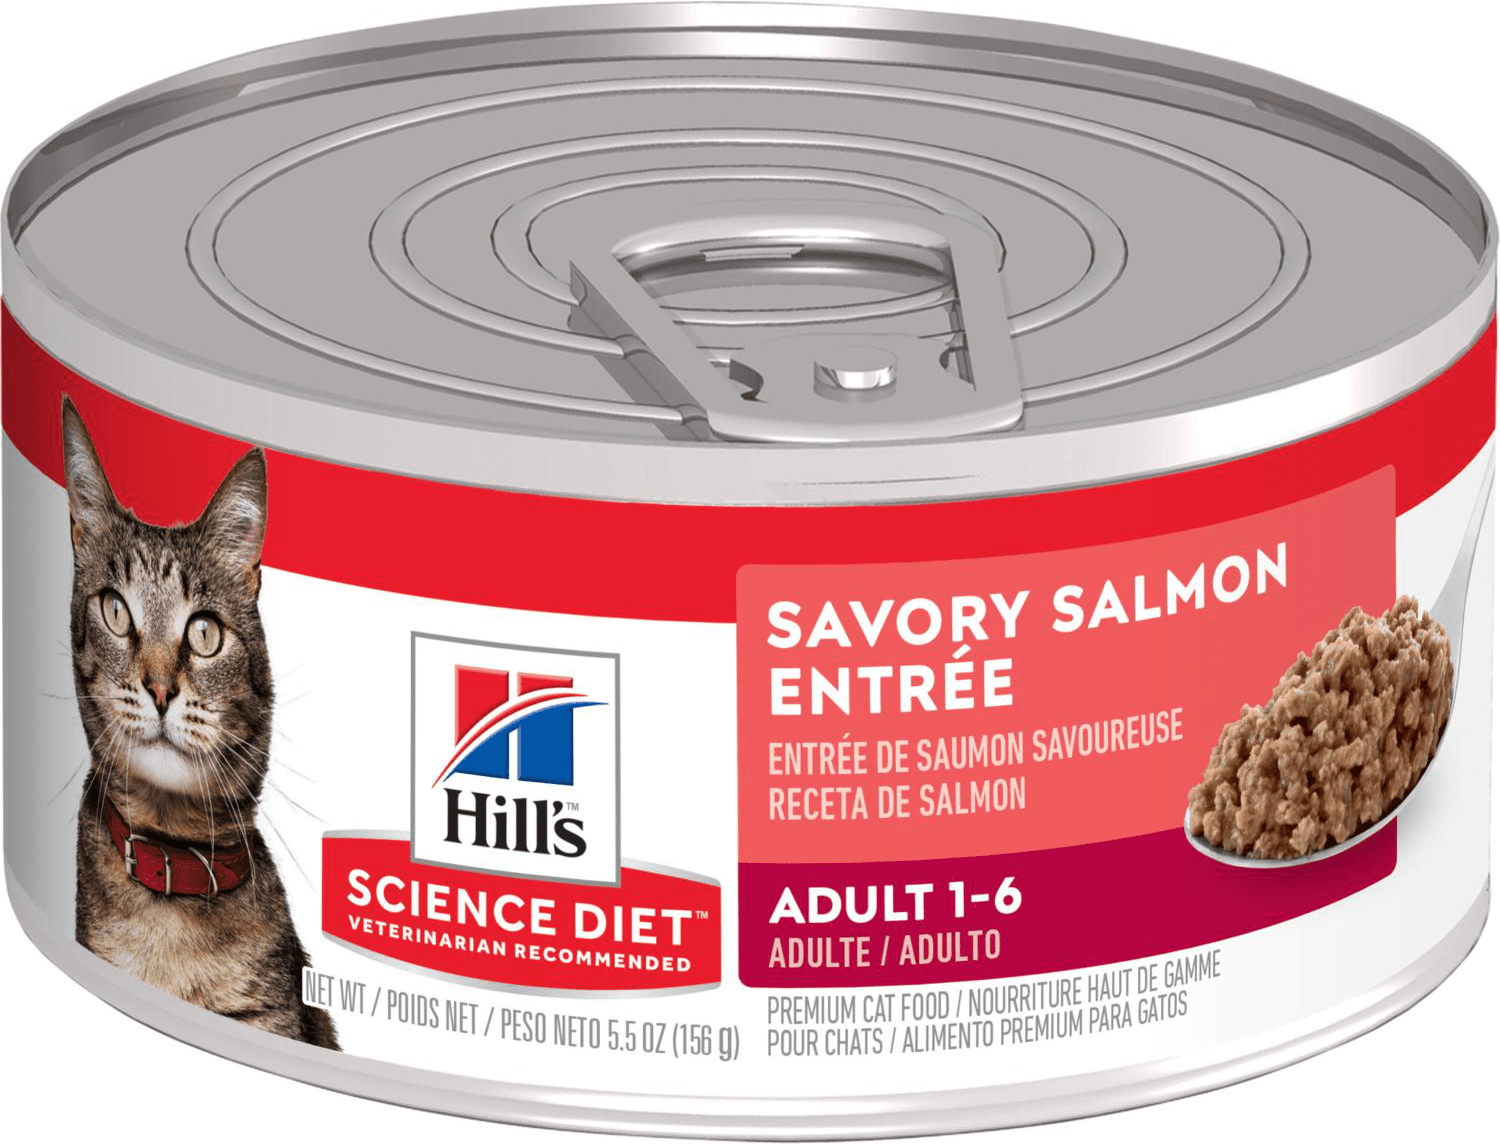 Hill's Science Diet Adult Savory Salmon Entrée